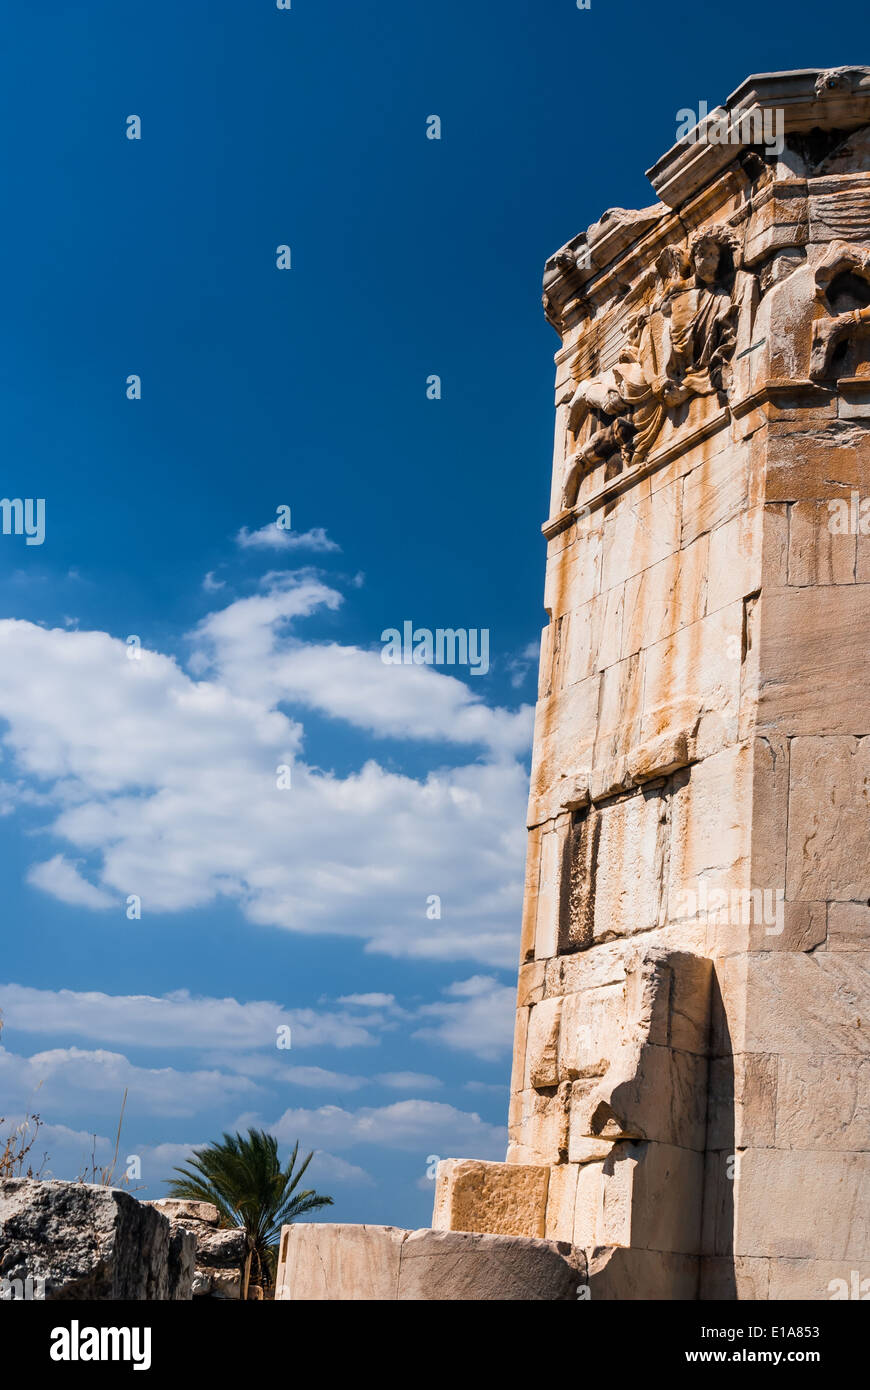 Atenas, Grecia. Torre de los vientos, estructura octogonal fue construido como un reloj de agua y veleta en el siglo 1 antes de Cristo. Foto de stock